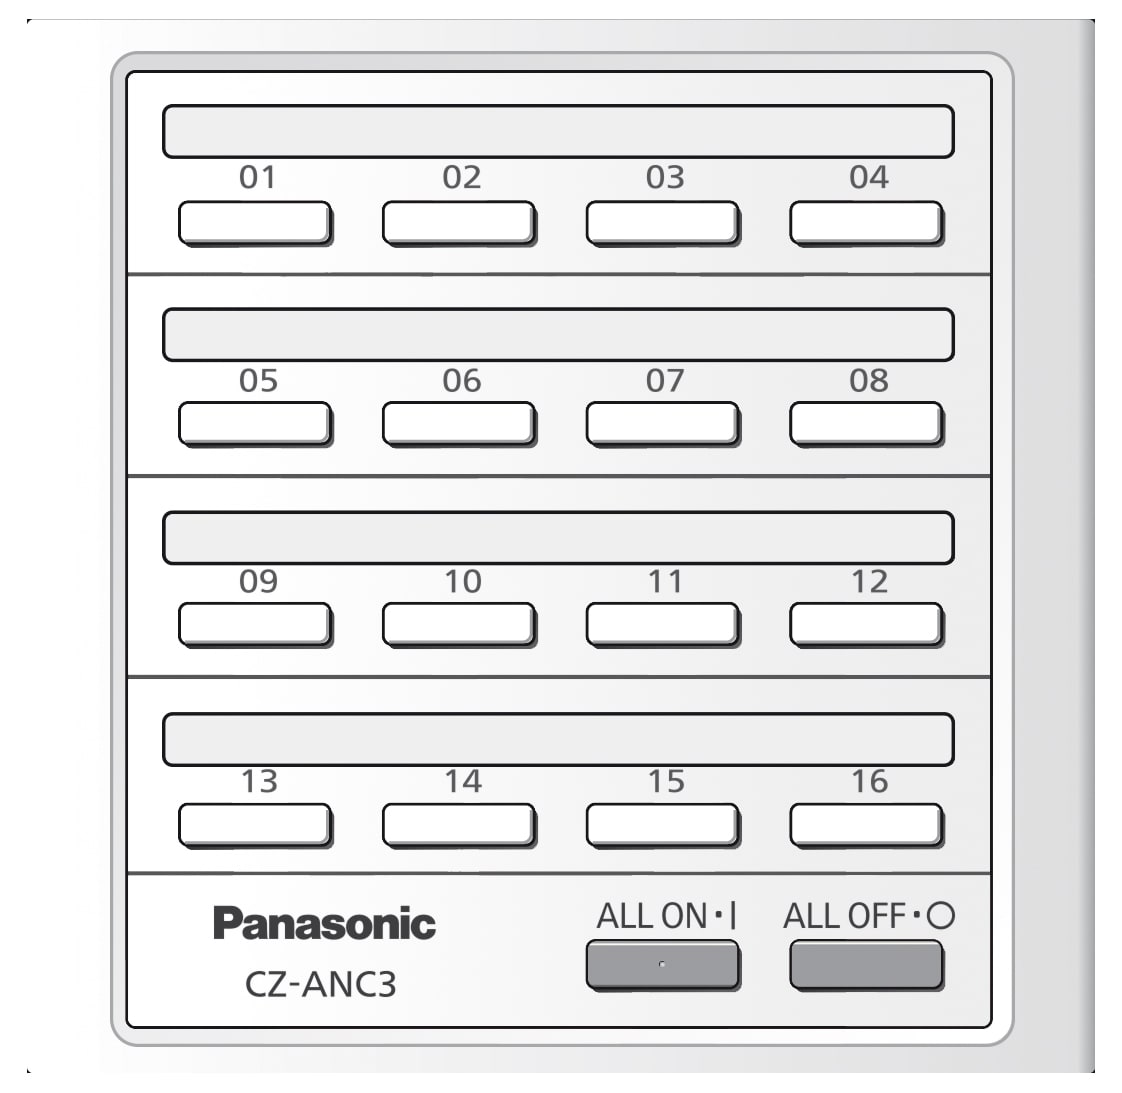 Panasonic Clim - Tcd centralisée marche/arrêt, jusqu'à 16 groupes, 64 unités intérieures.